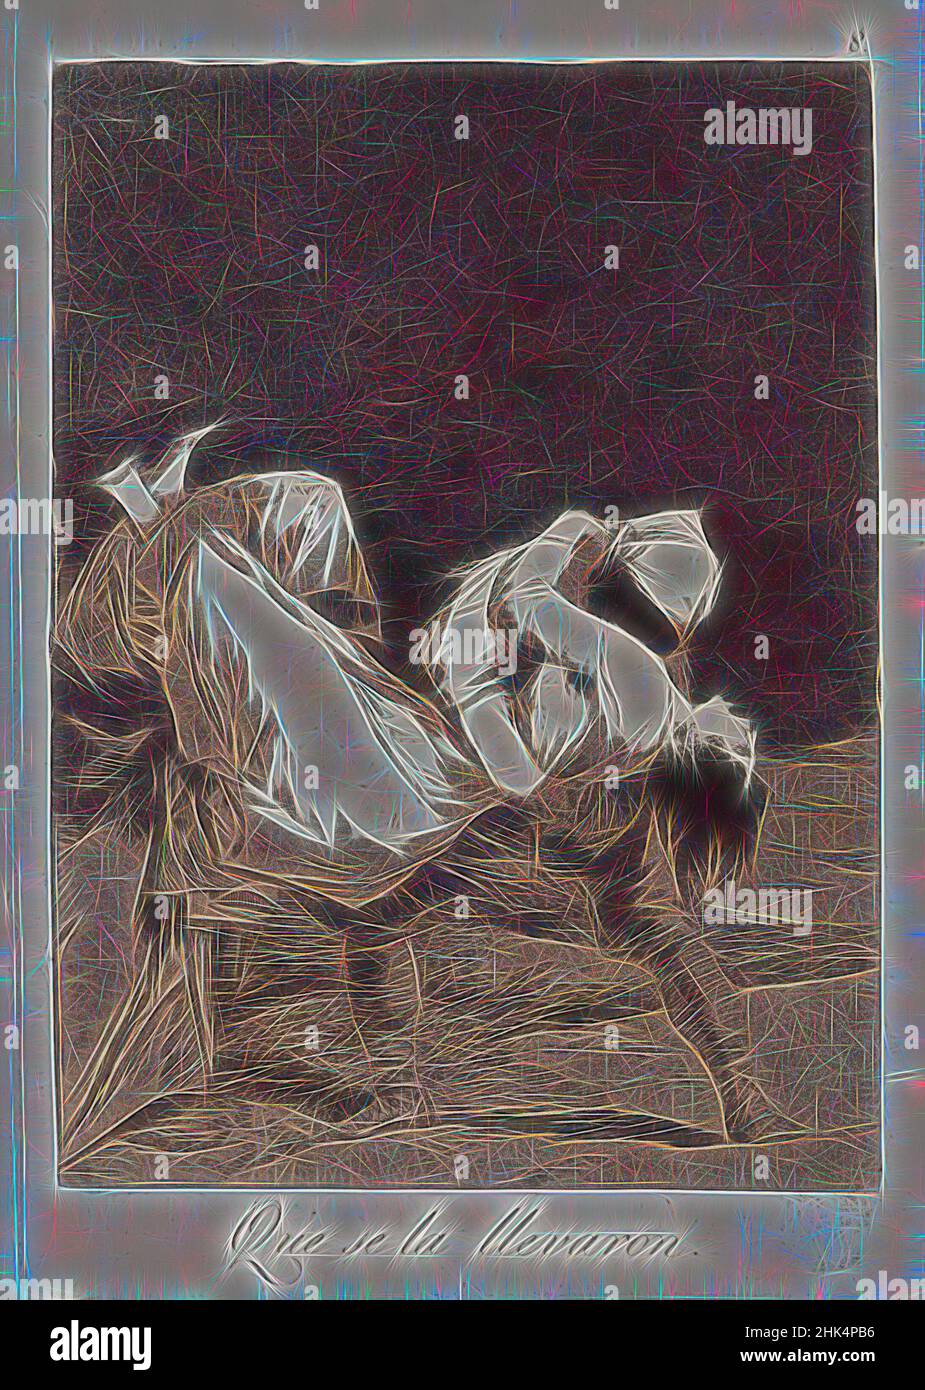 Inspiriert von they Carried her Off!, Que se la llevaron!, Los Caprichos, Platte 8, Francisco de Goya y Lucientes, Spanisch, 1746-1828, Radierung und Aquatinta auf gedecktem Papier, Spanien, 1797-1798, Platte: 8 9/16 x 6 Zoll, 21,7 x 15,2 cm, Aquatinta, Tragen, Gravieren, Radieren, Mann mit Frau, Alter Meister, Druck, neu erfunden von Artotop. Klassische Kunst neu erfunden mit einem modernen Twist. Design von warmen fröhlichen Leuchten der Helligkeit und Lichtstrahl Strahlkraft. Fotografie inspiriert von Surrealismus und Futurismus, umarmt dynamische Energie der modernen Technologie, Bewegung, Geschwindigkeit und Kultur zu revolutionieren Stockfoto